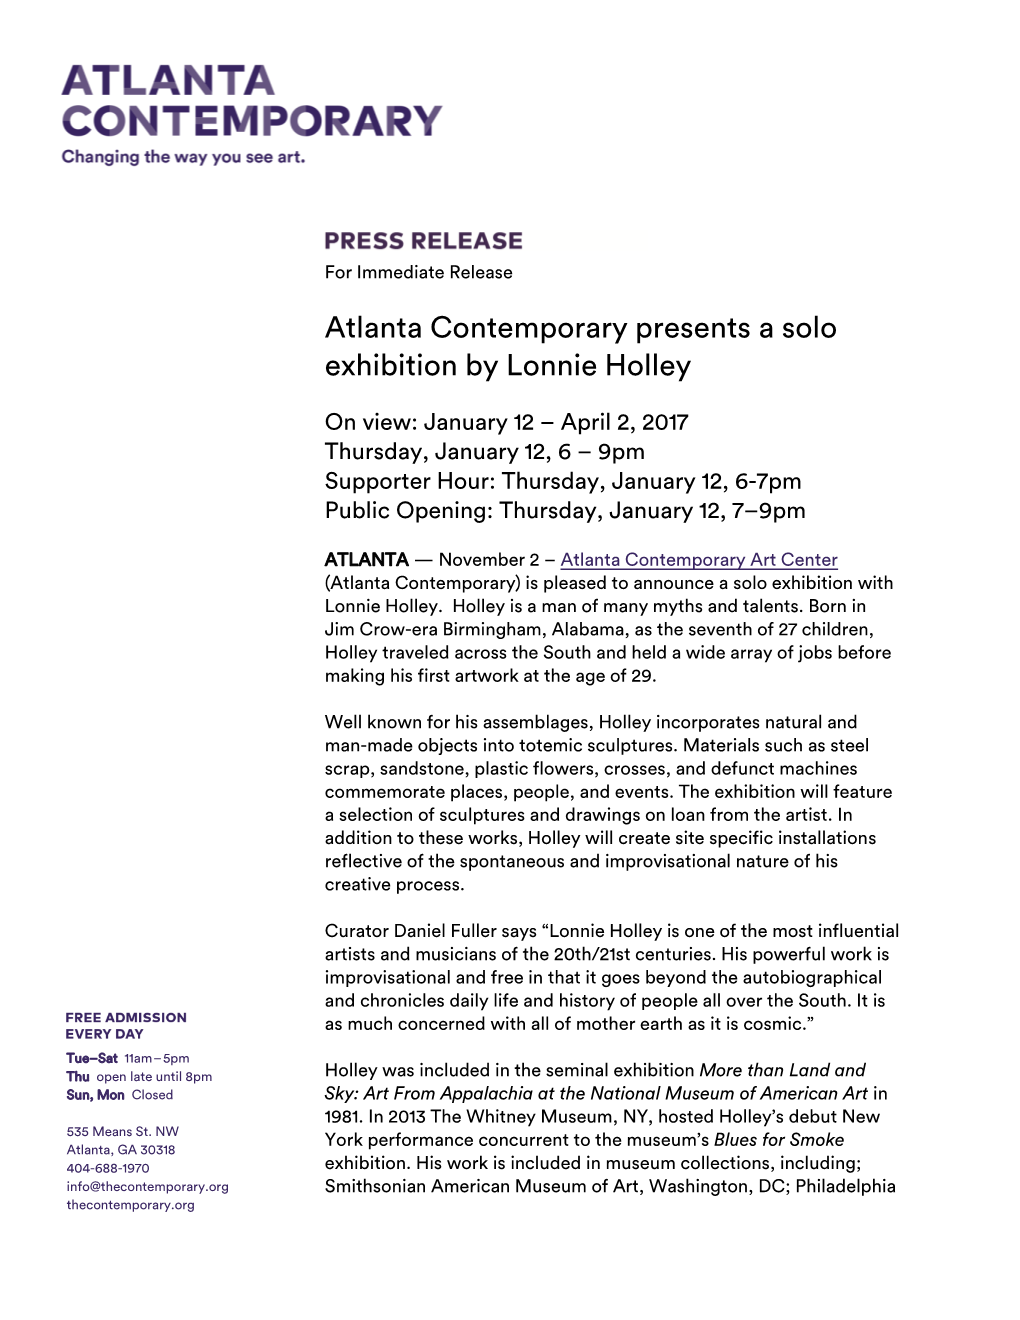 Atlanta Contemporary Presents a Solo Exhibition by Lonnie Holley